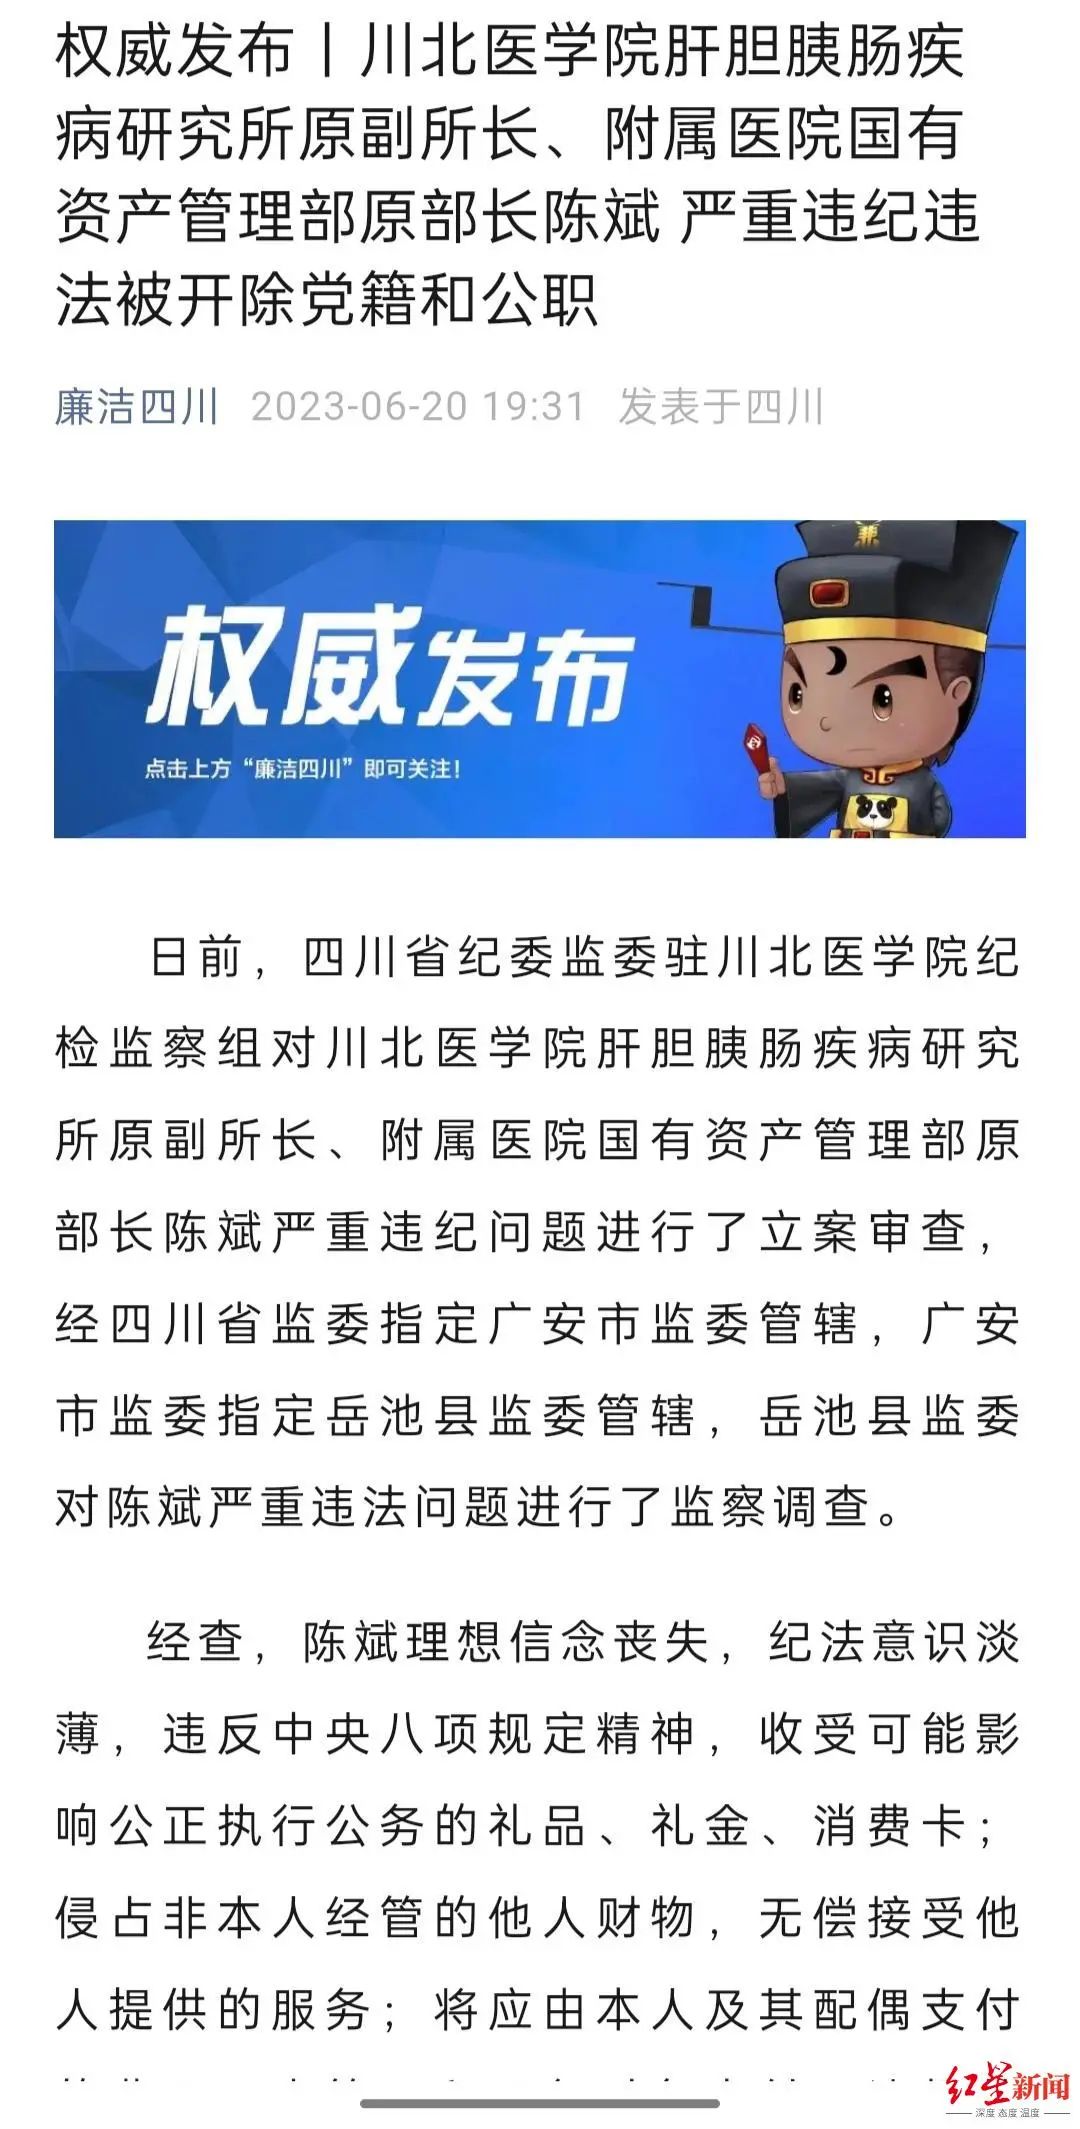 北京安贞医院原院长被双开 其保护伞同期落马 ＊ 阿波罗新闻网